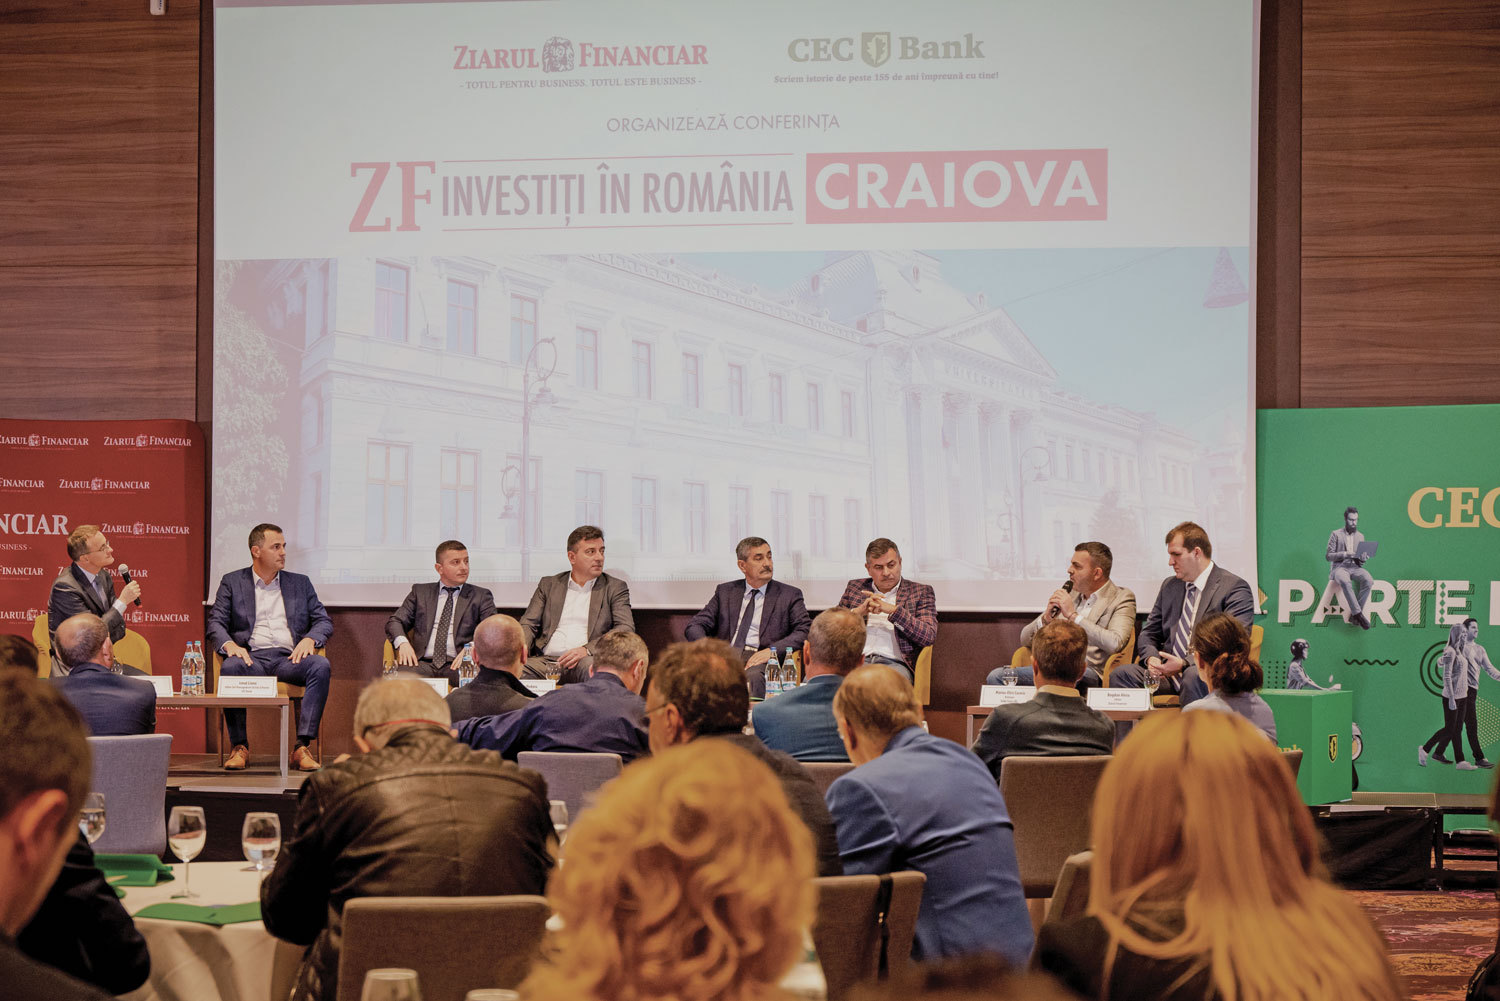 ZF Investiţi în România! - Craiova, un proiect ZF&CEC Bank. Infrastructura de utilităţi şi construcţiile pot atrage investiţii mari în continuare, dar trebuie atrase mai multe fonduri europene şi statul trebuie să plătească la timp lucrările